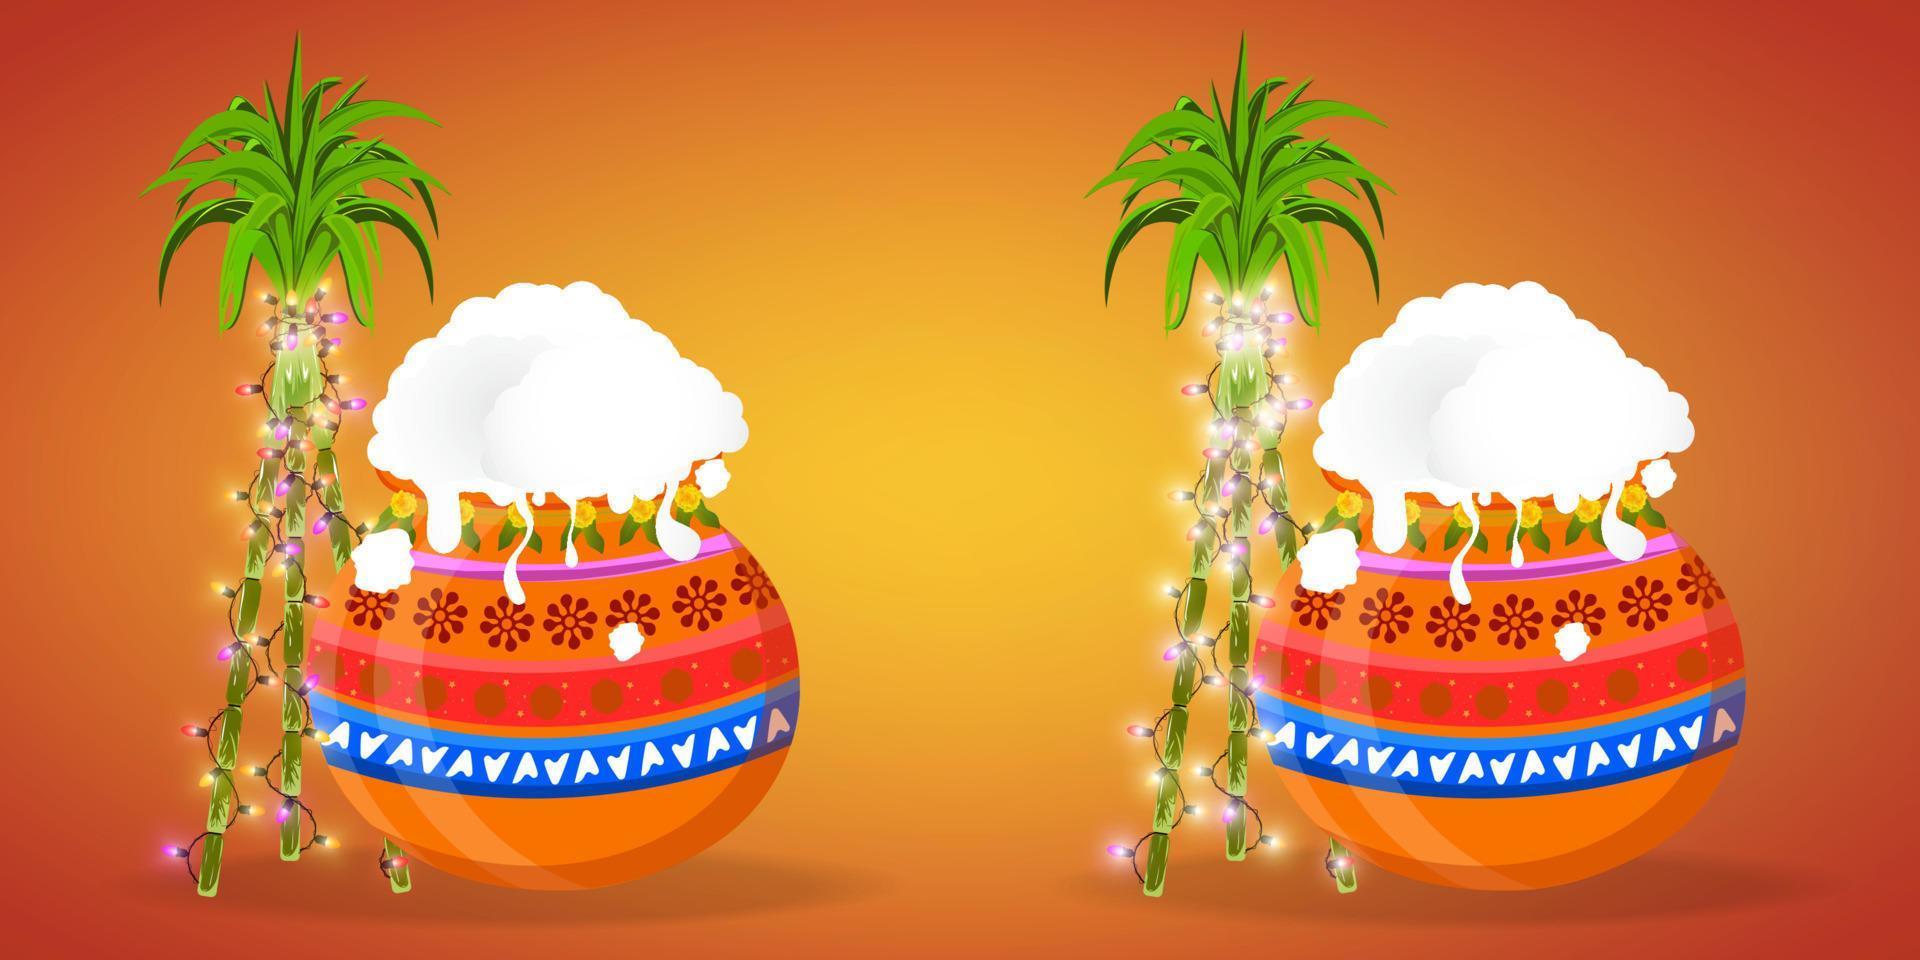 feliz festival de la cosecha navideña pongal de tamil nadu en el sur de la india. bastones decorados con luces intermitentes y una olla pongal cerca. ilustración vectorial vector